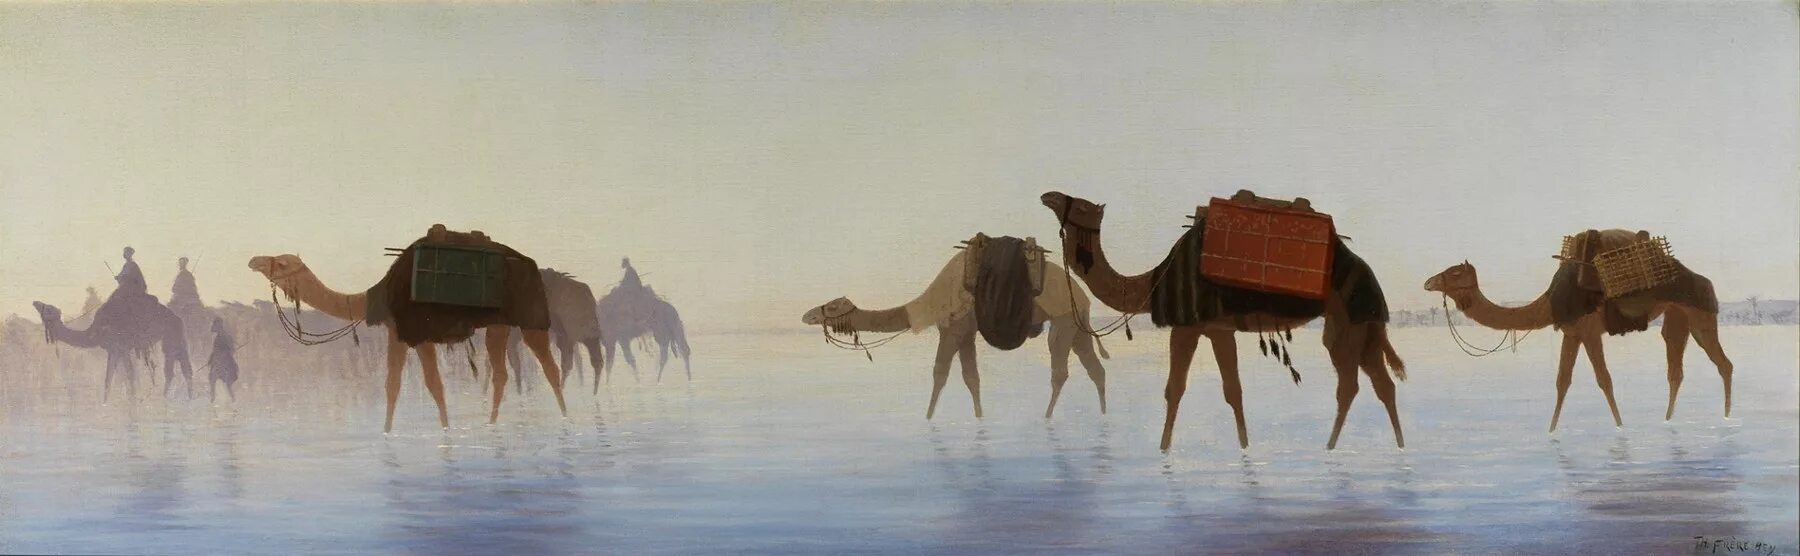 Верблюд в пустыне. Верблюд живопись. Караван верблюдов.